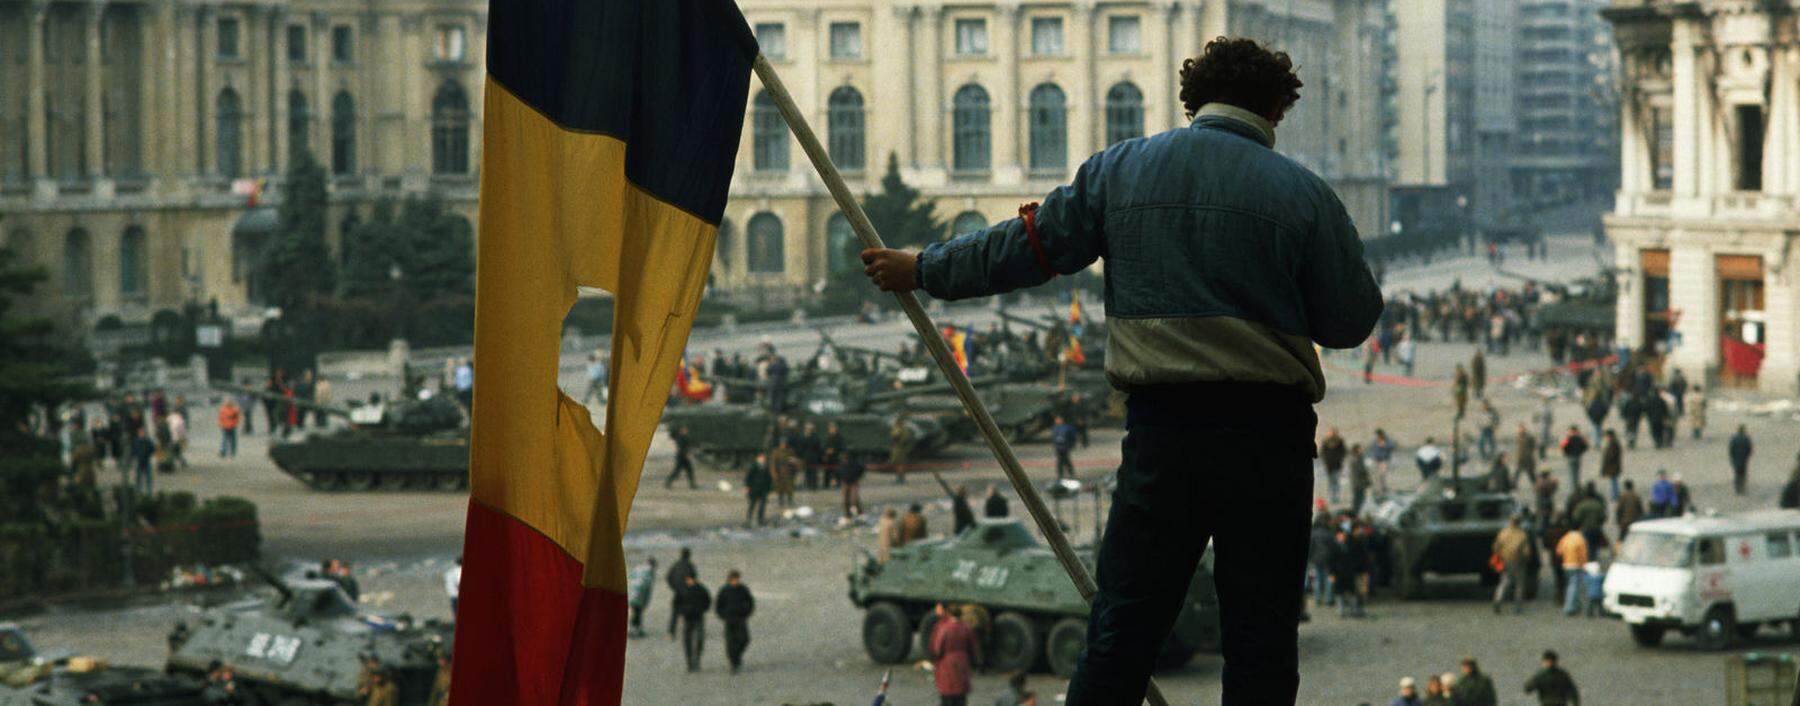 Auf dem Platz vor dem Bukarester Regierungspalast, Dezember 1989. Aus rumänischen Fahnen schnitt man damals die Insignien der Kommunistendiktatur.